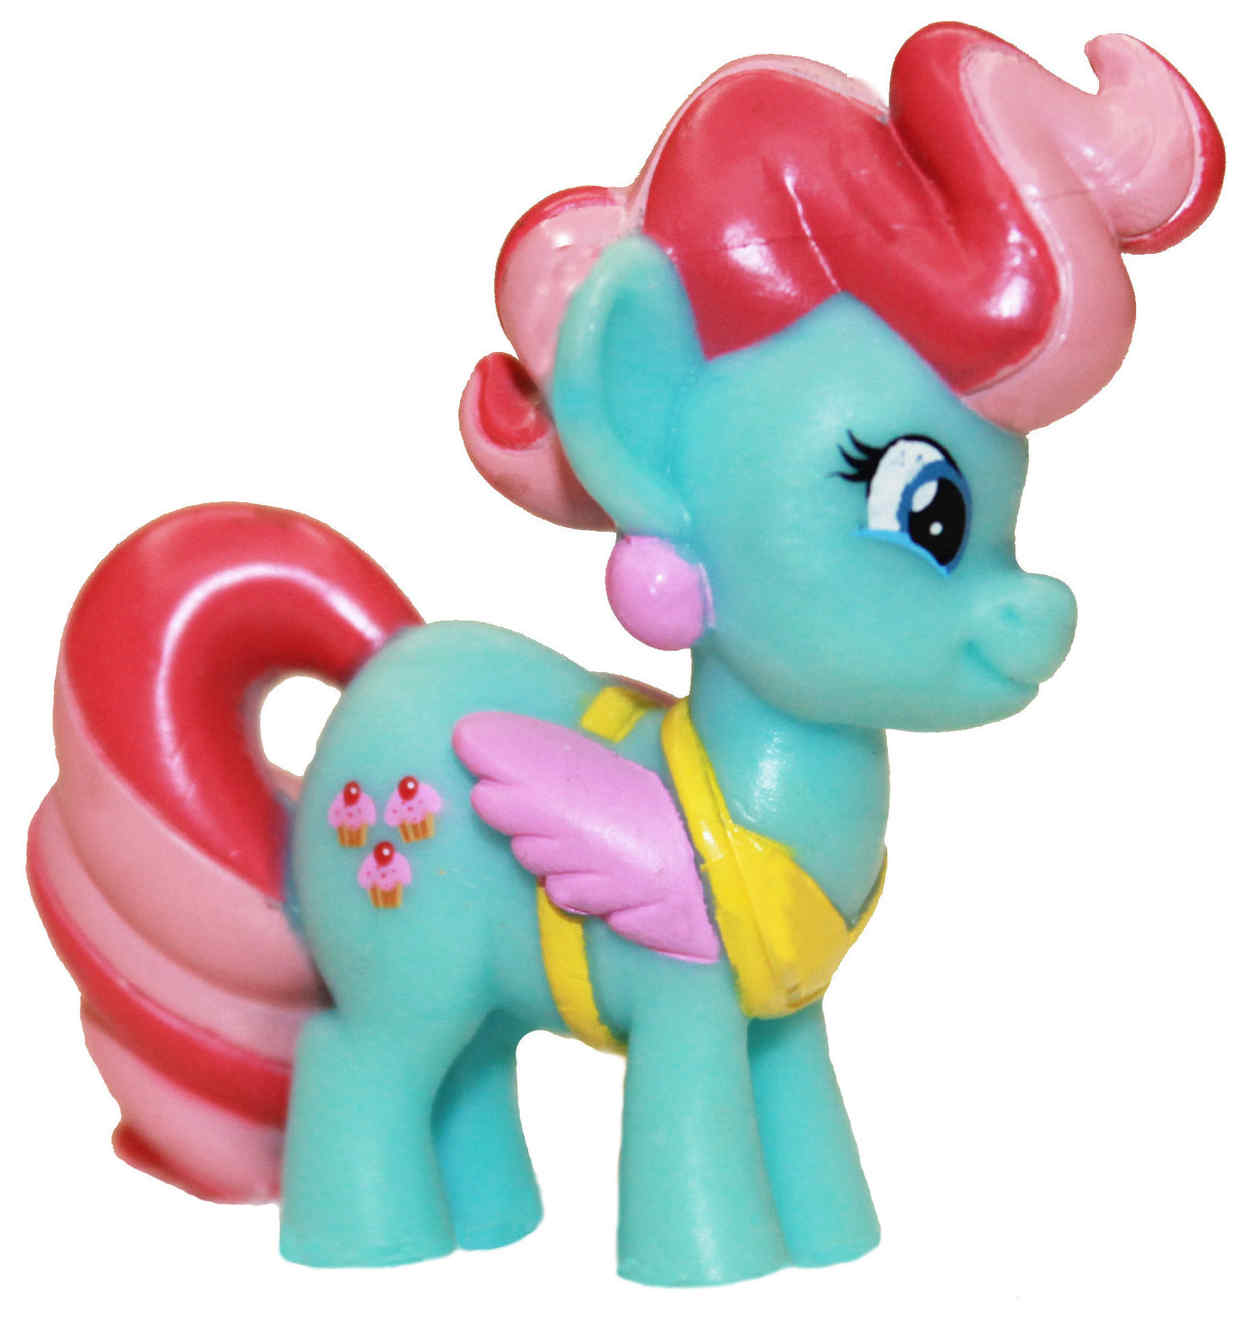 Pony g4. MLP g4 игрушки. My little Pony g4. Пони g4.5.5. My little Pony игрушки мини пони.